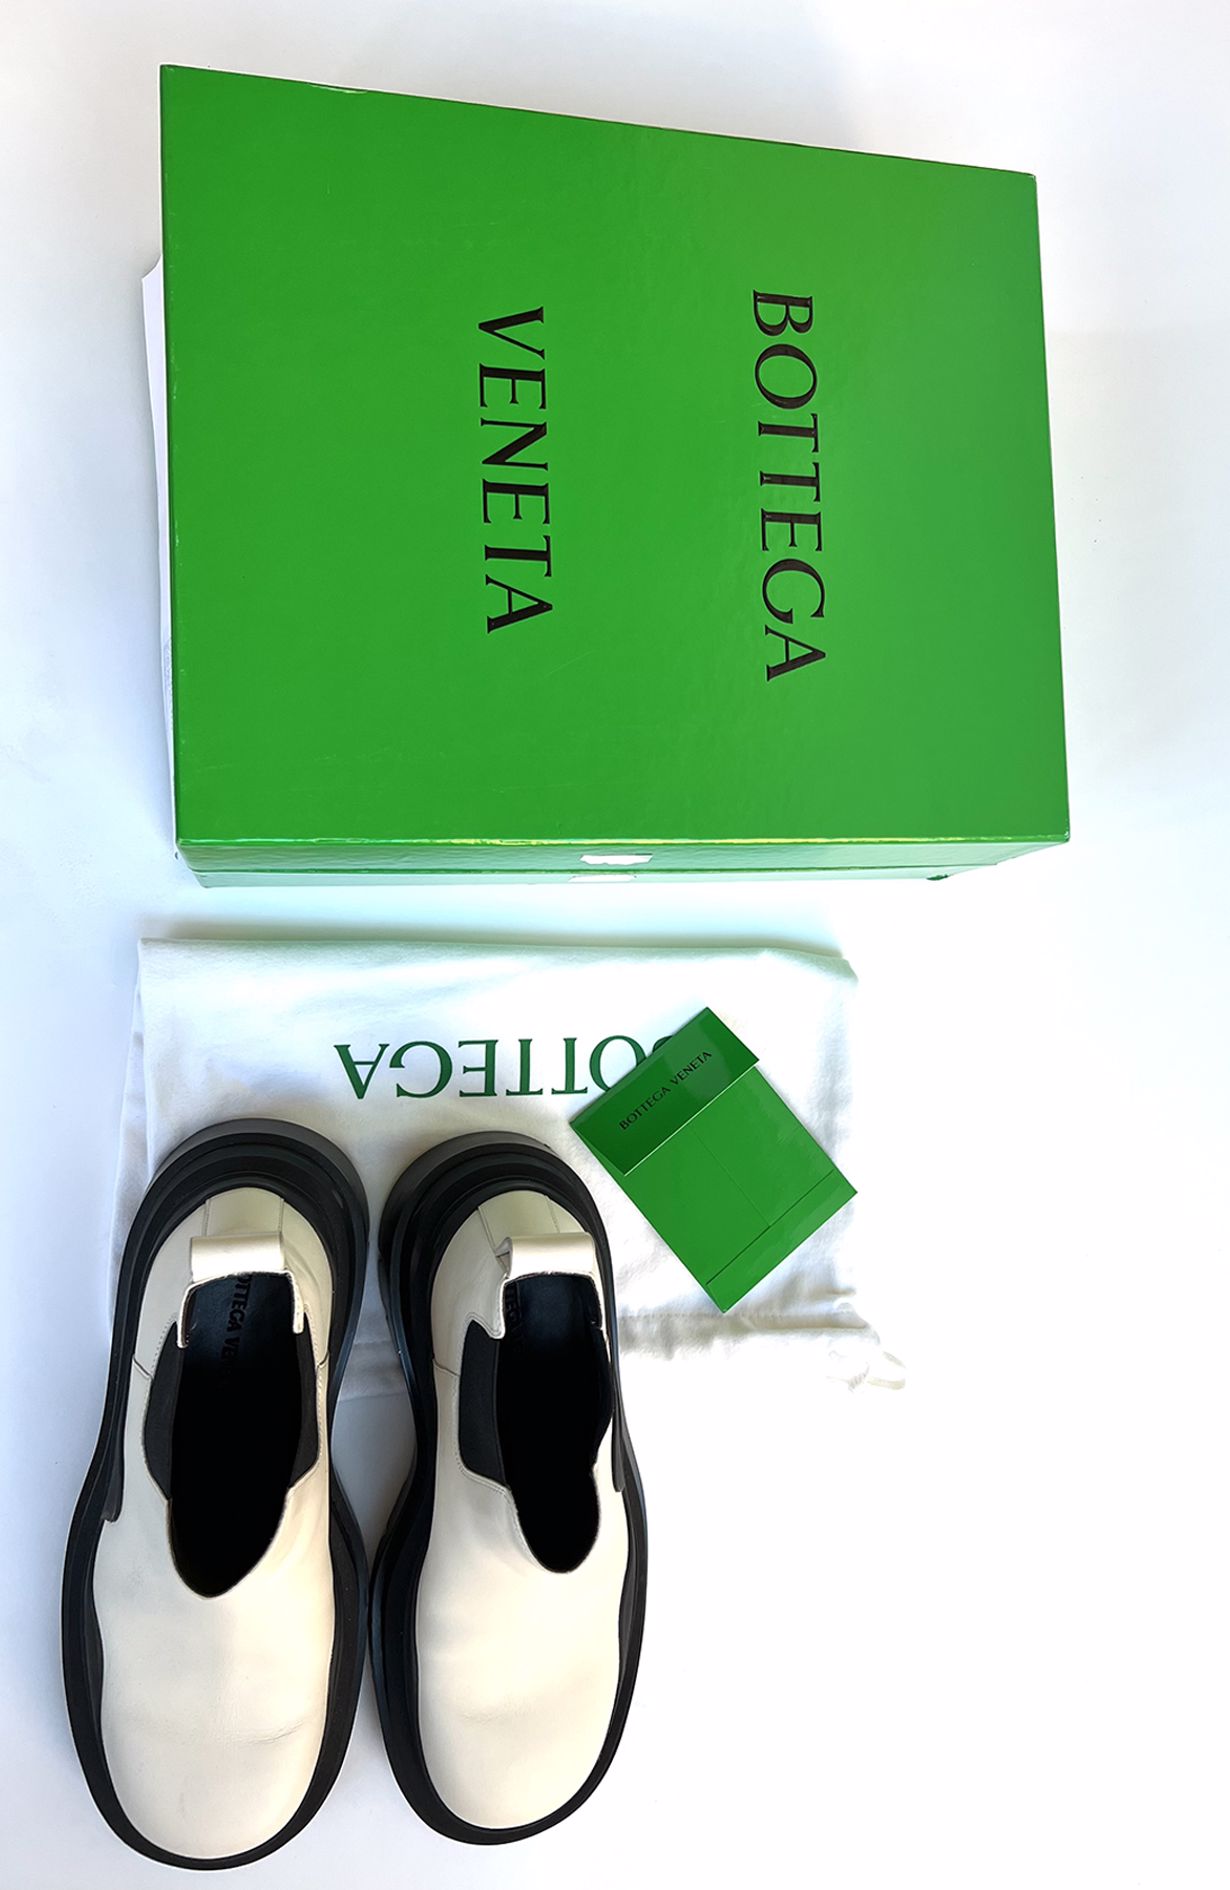 Bottega Veneta White Boots - Size 40 W. Box